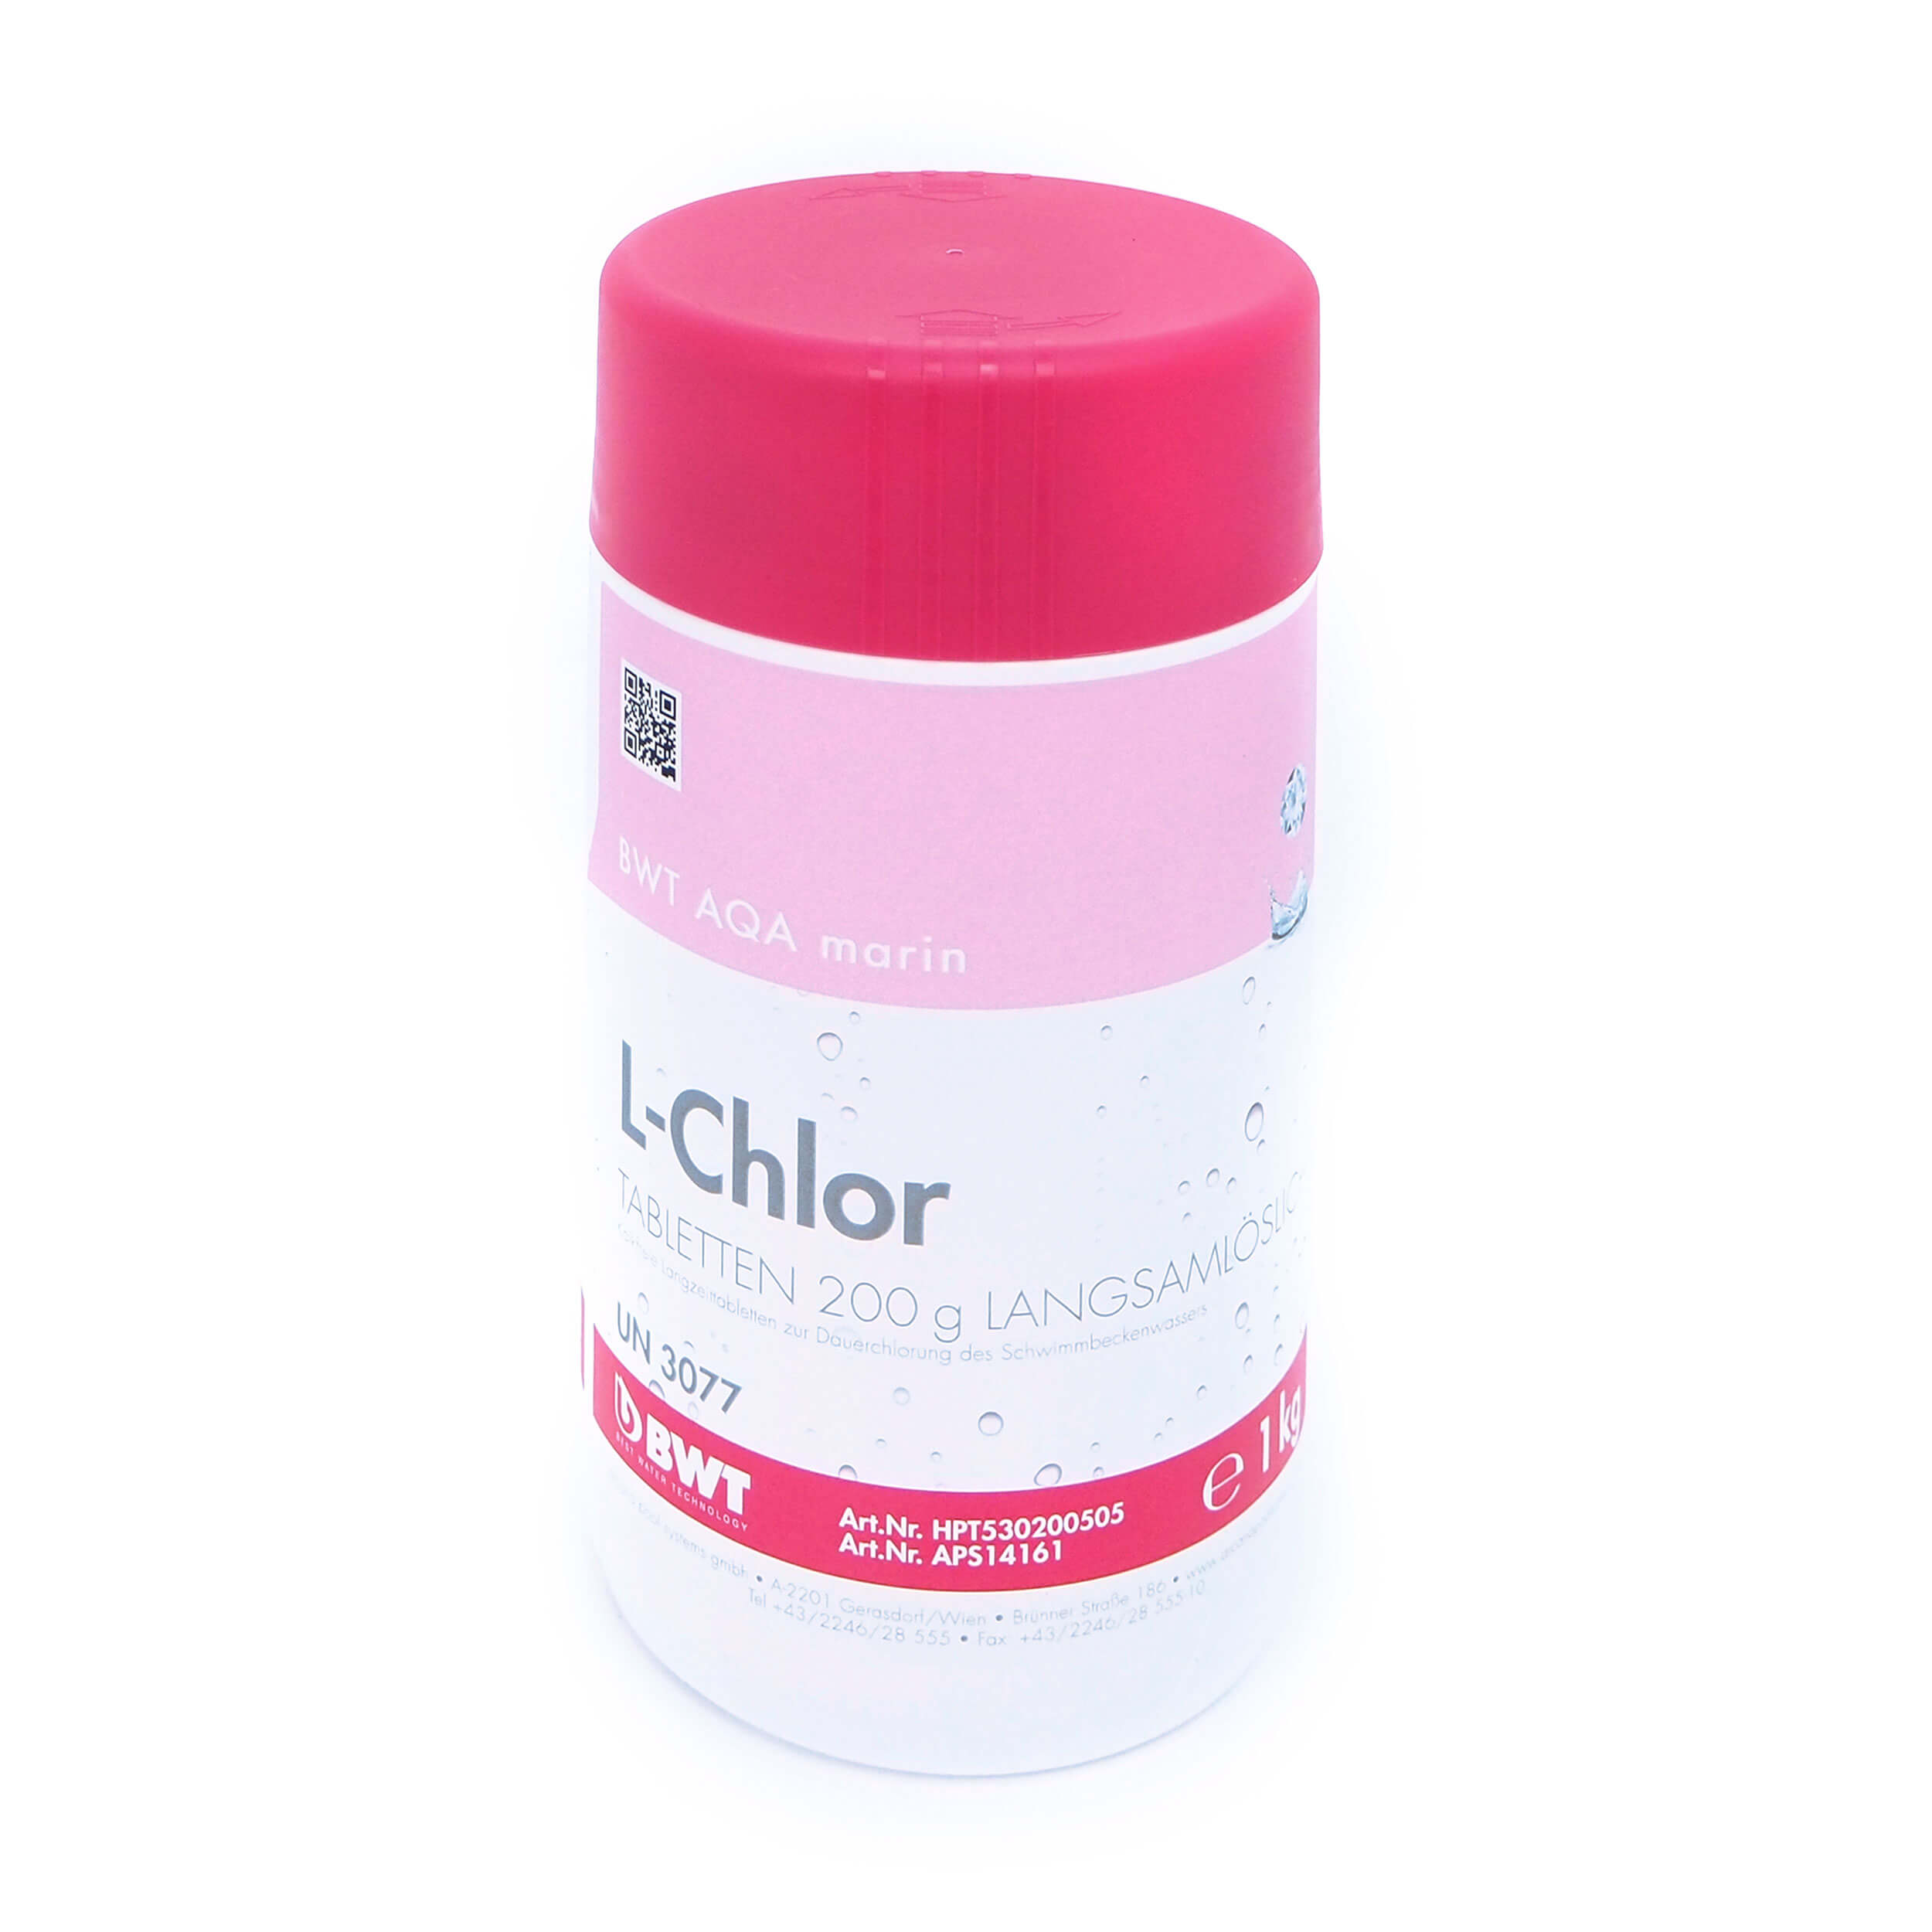 AQA marin L-Chlor Tabletten 200 g 1 kg